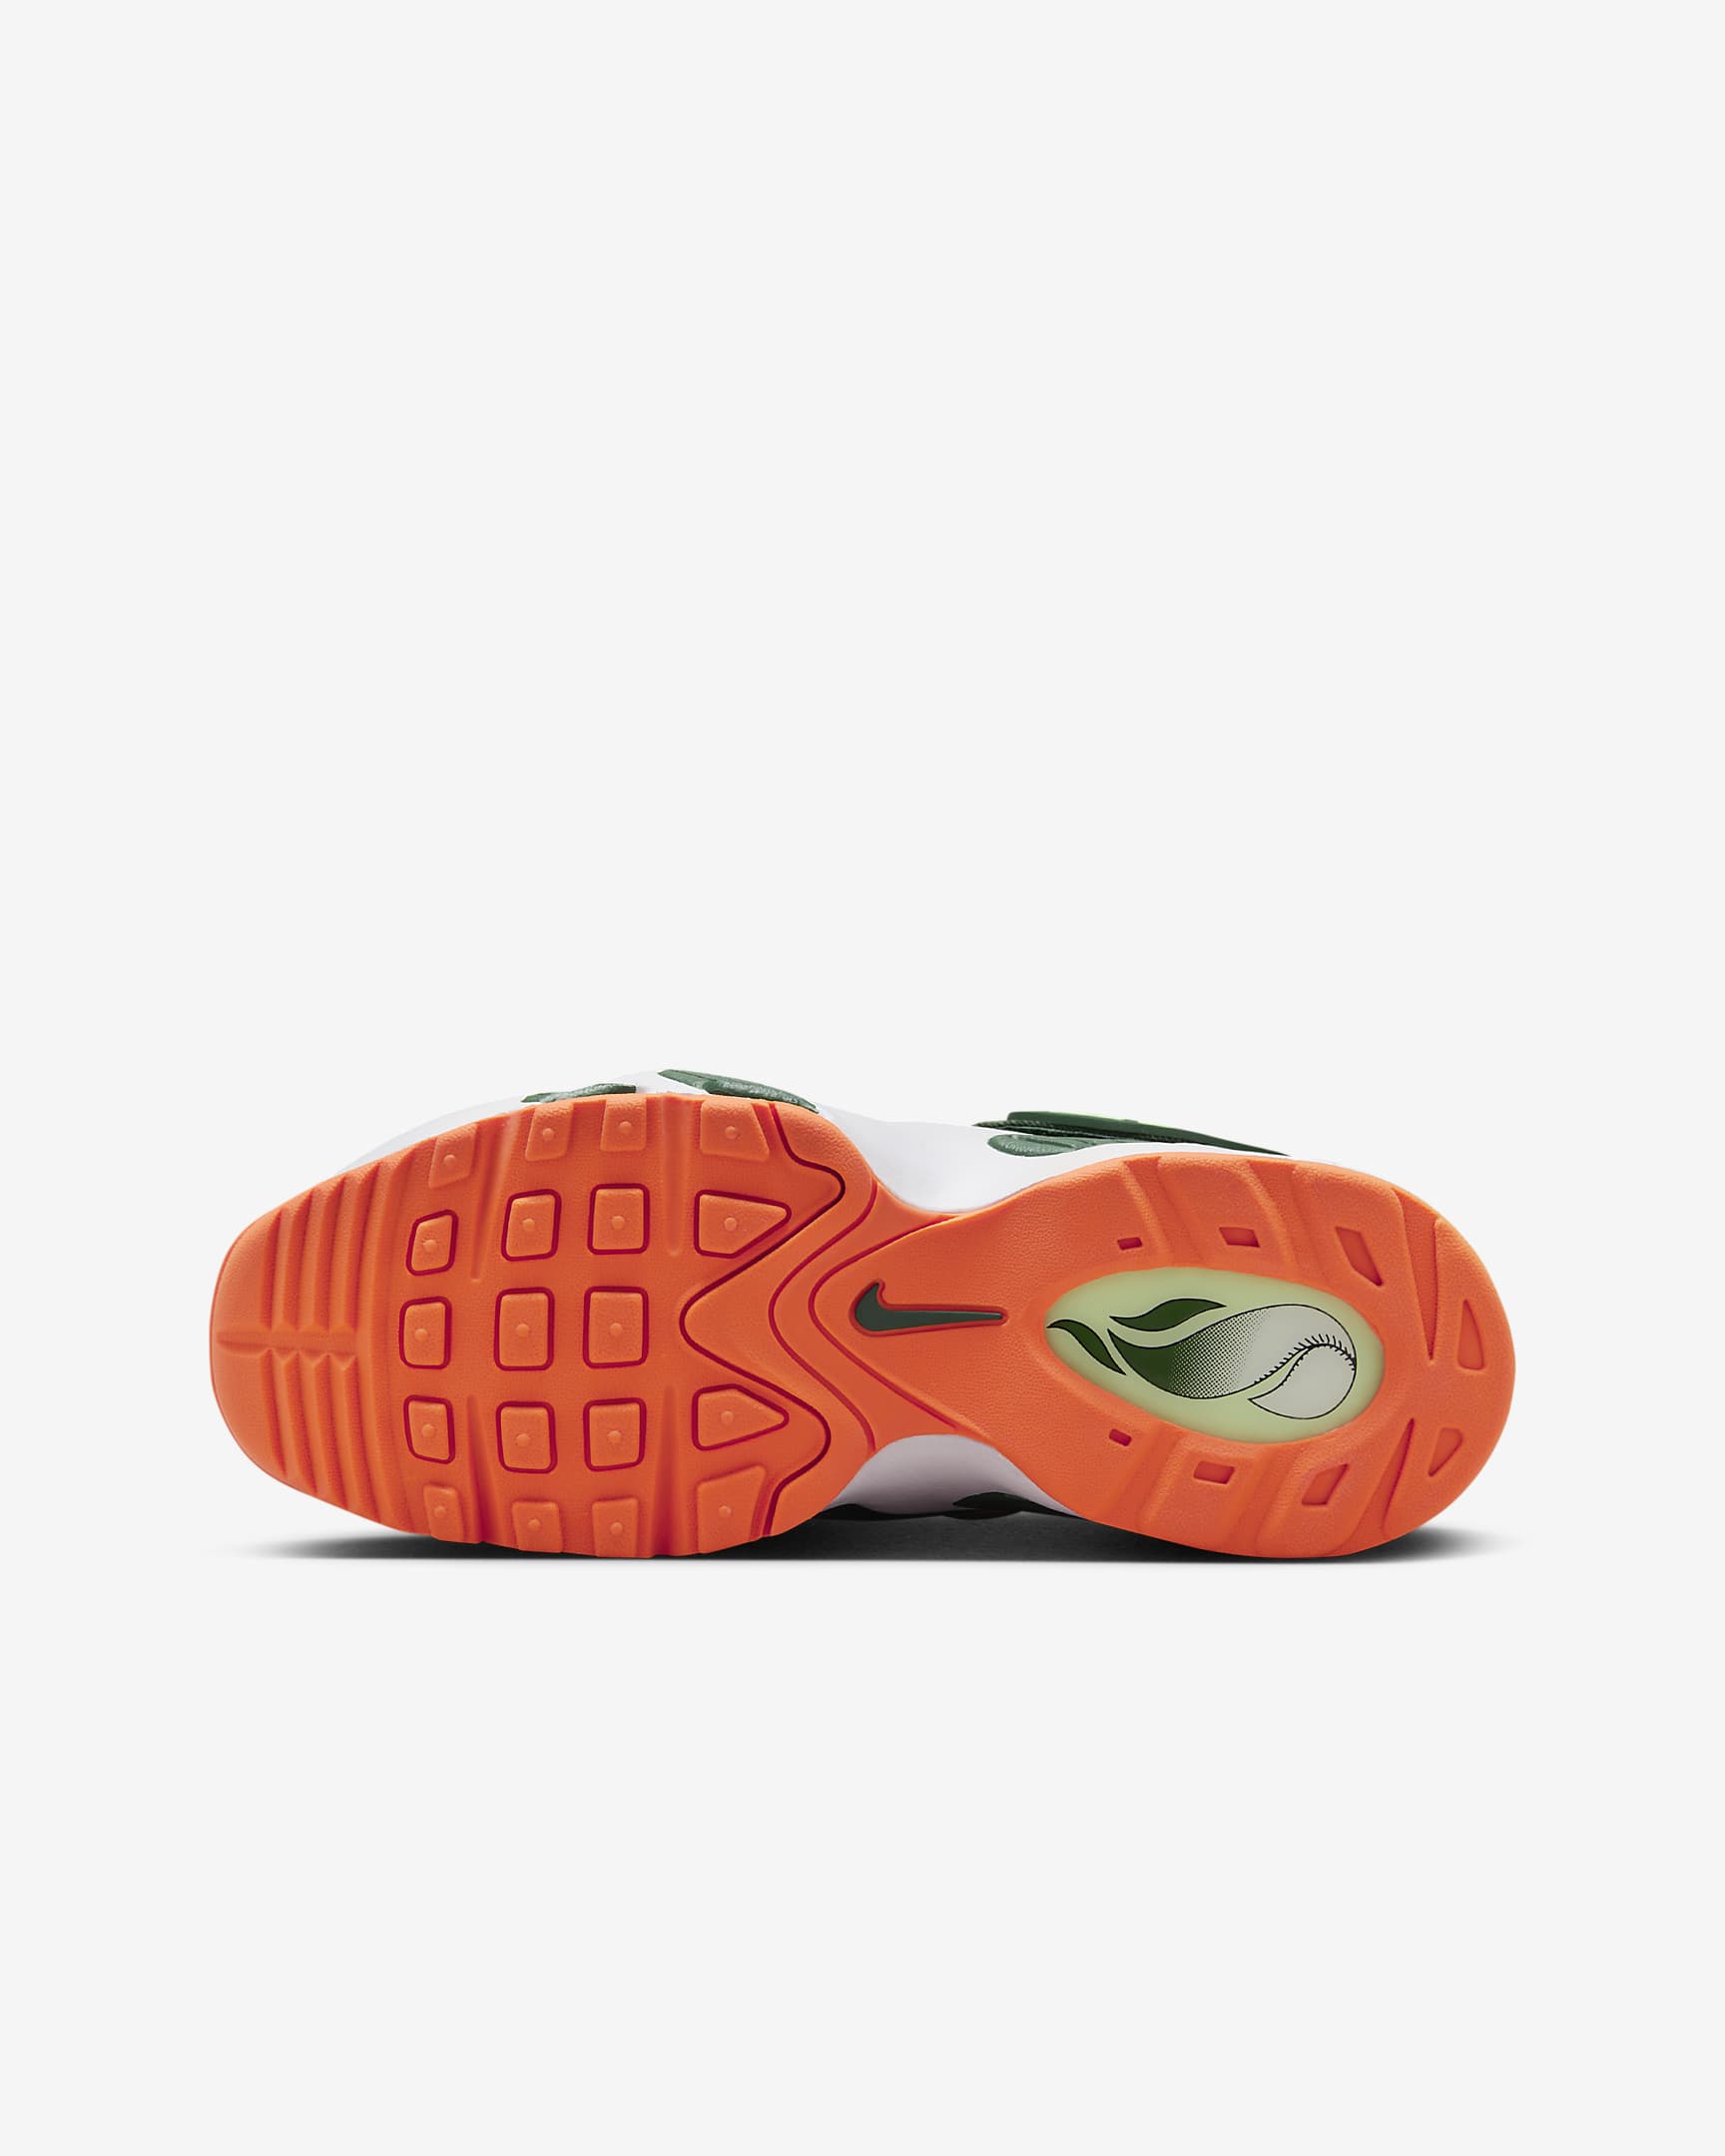 Nike Air Griffey Max 1 Big Kids' Shoes - Fir/White/Vapor Green/Bright Mandarin